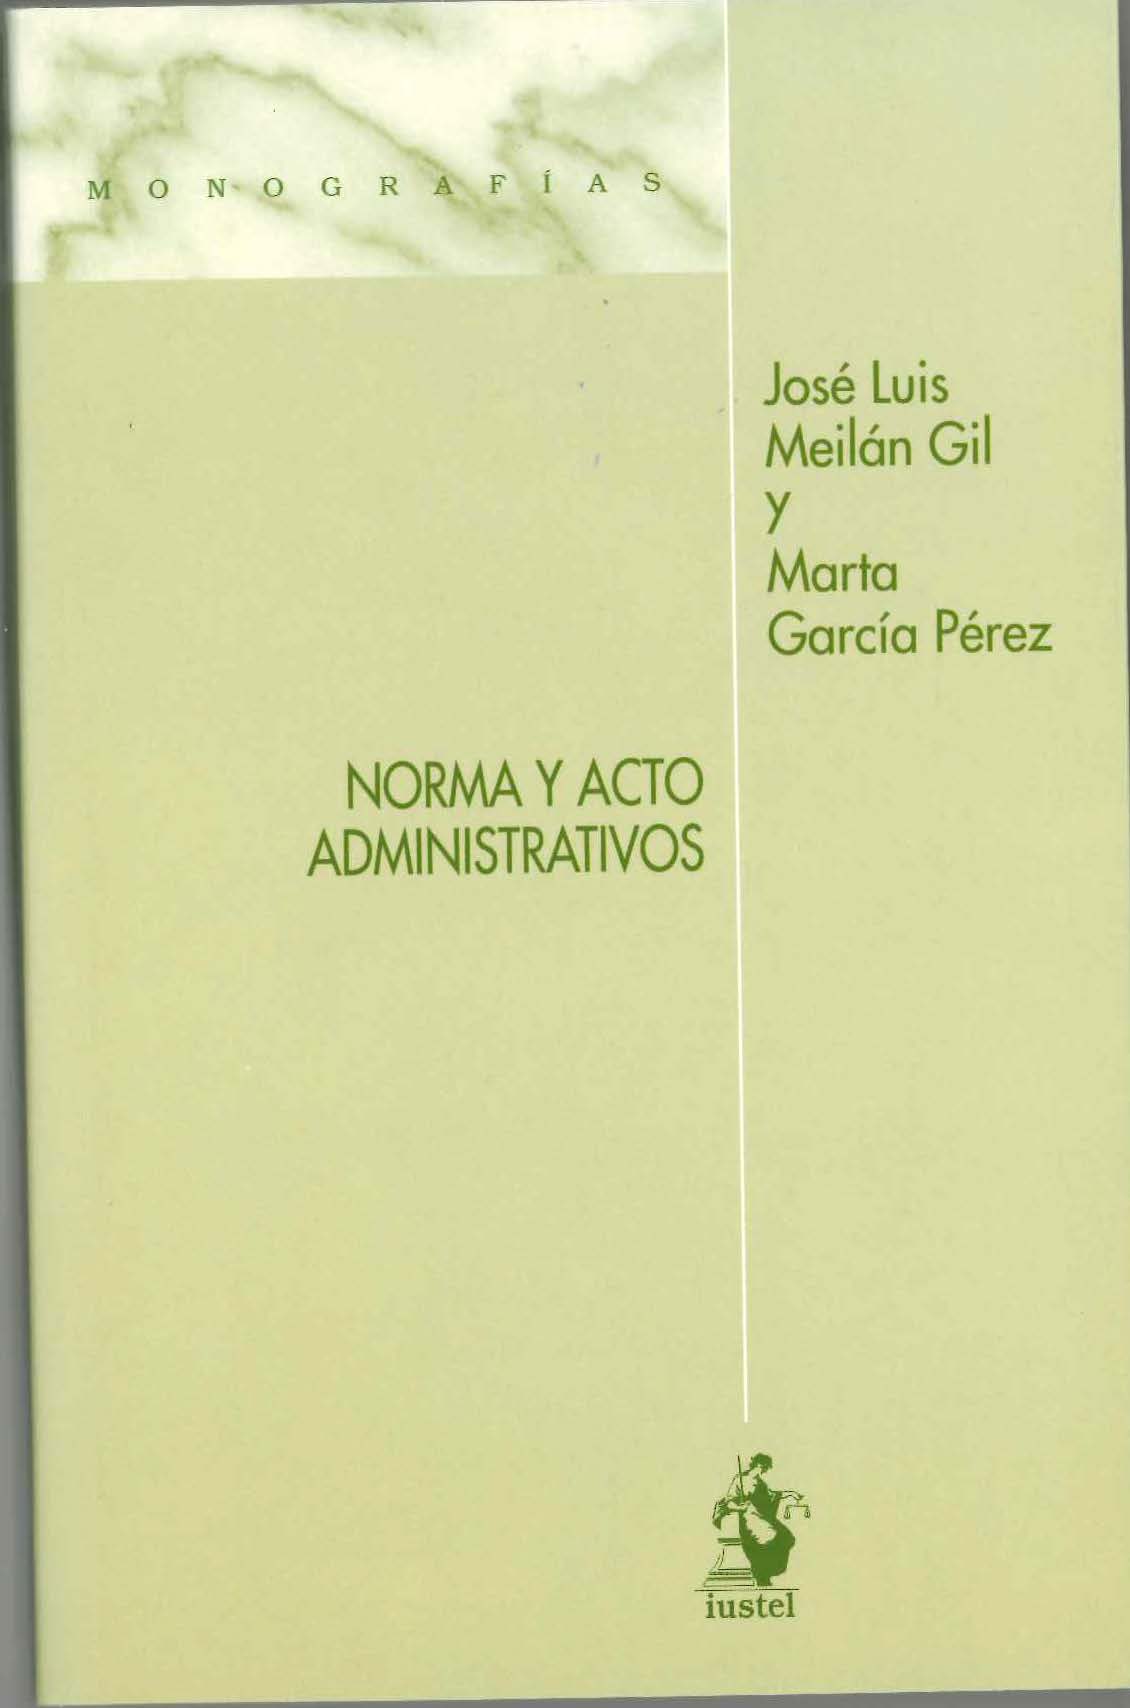 Imagen de portada del libro Norma y acto administrativos